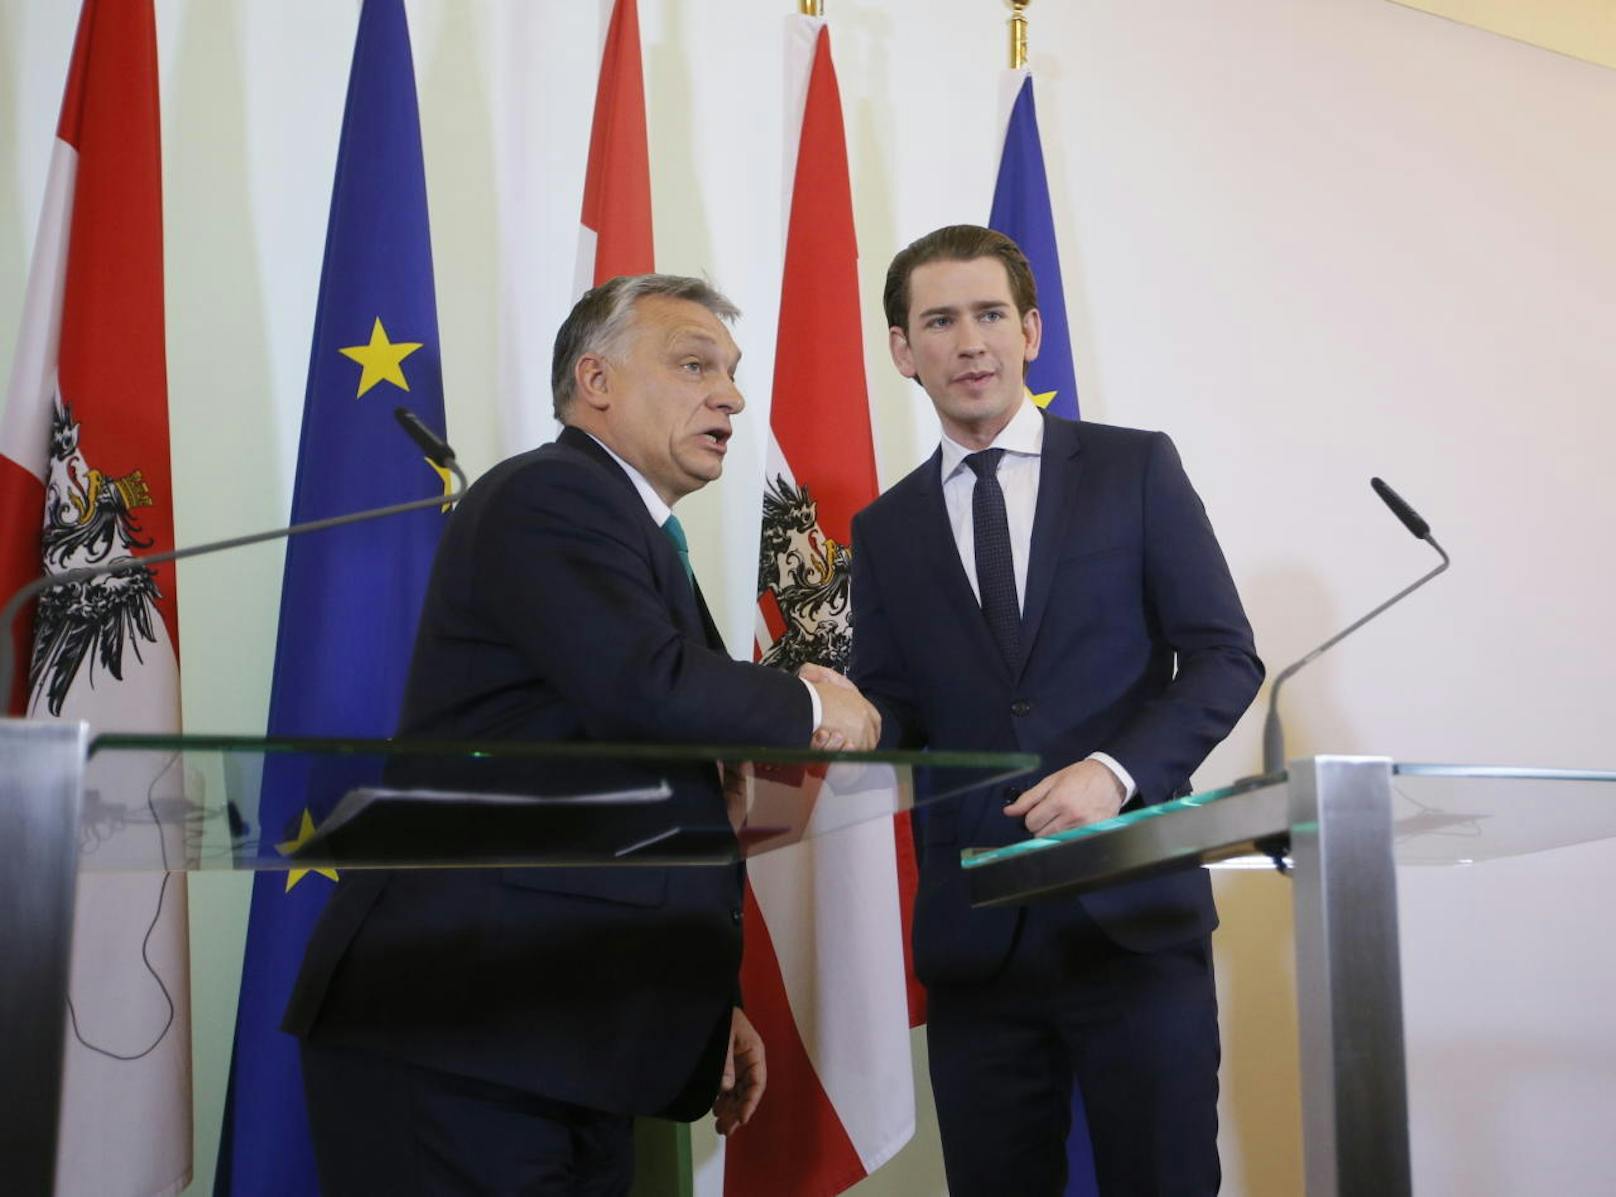 Wenige Stunden zuvor: Kanzler Sebastian Kurz und Orbán vor der EU-Flagge.